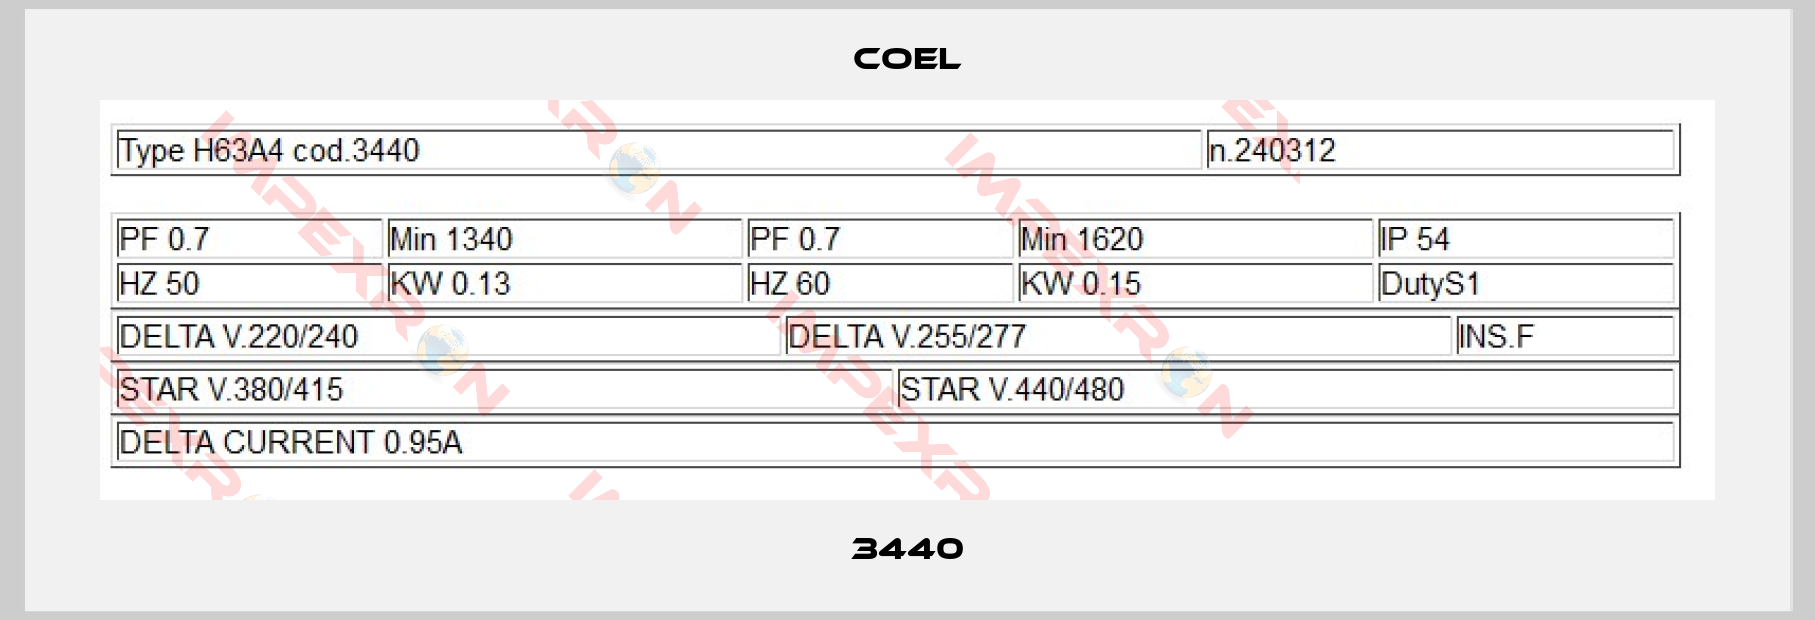 Coel-3440